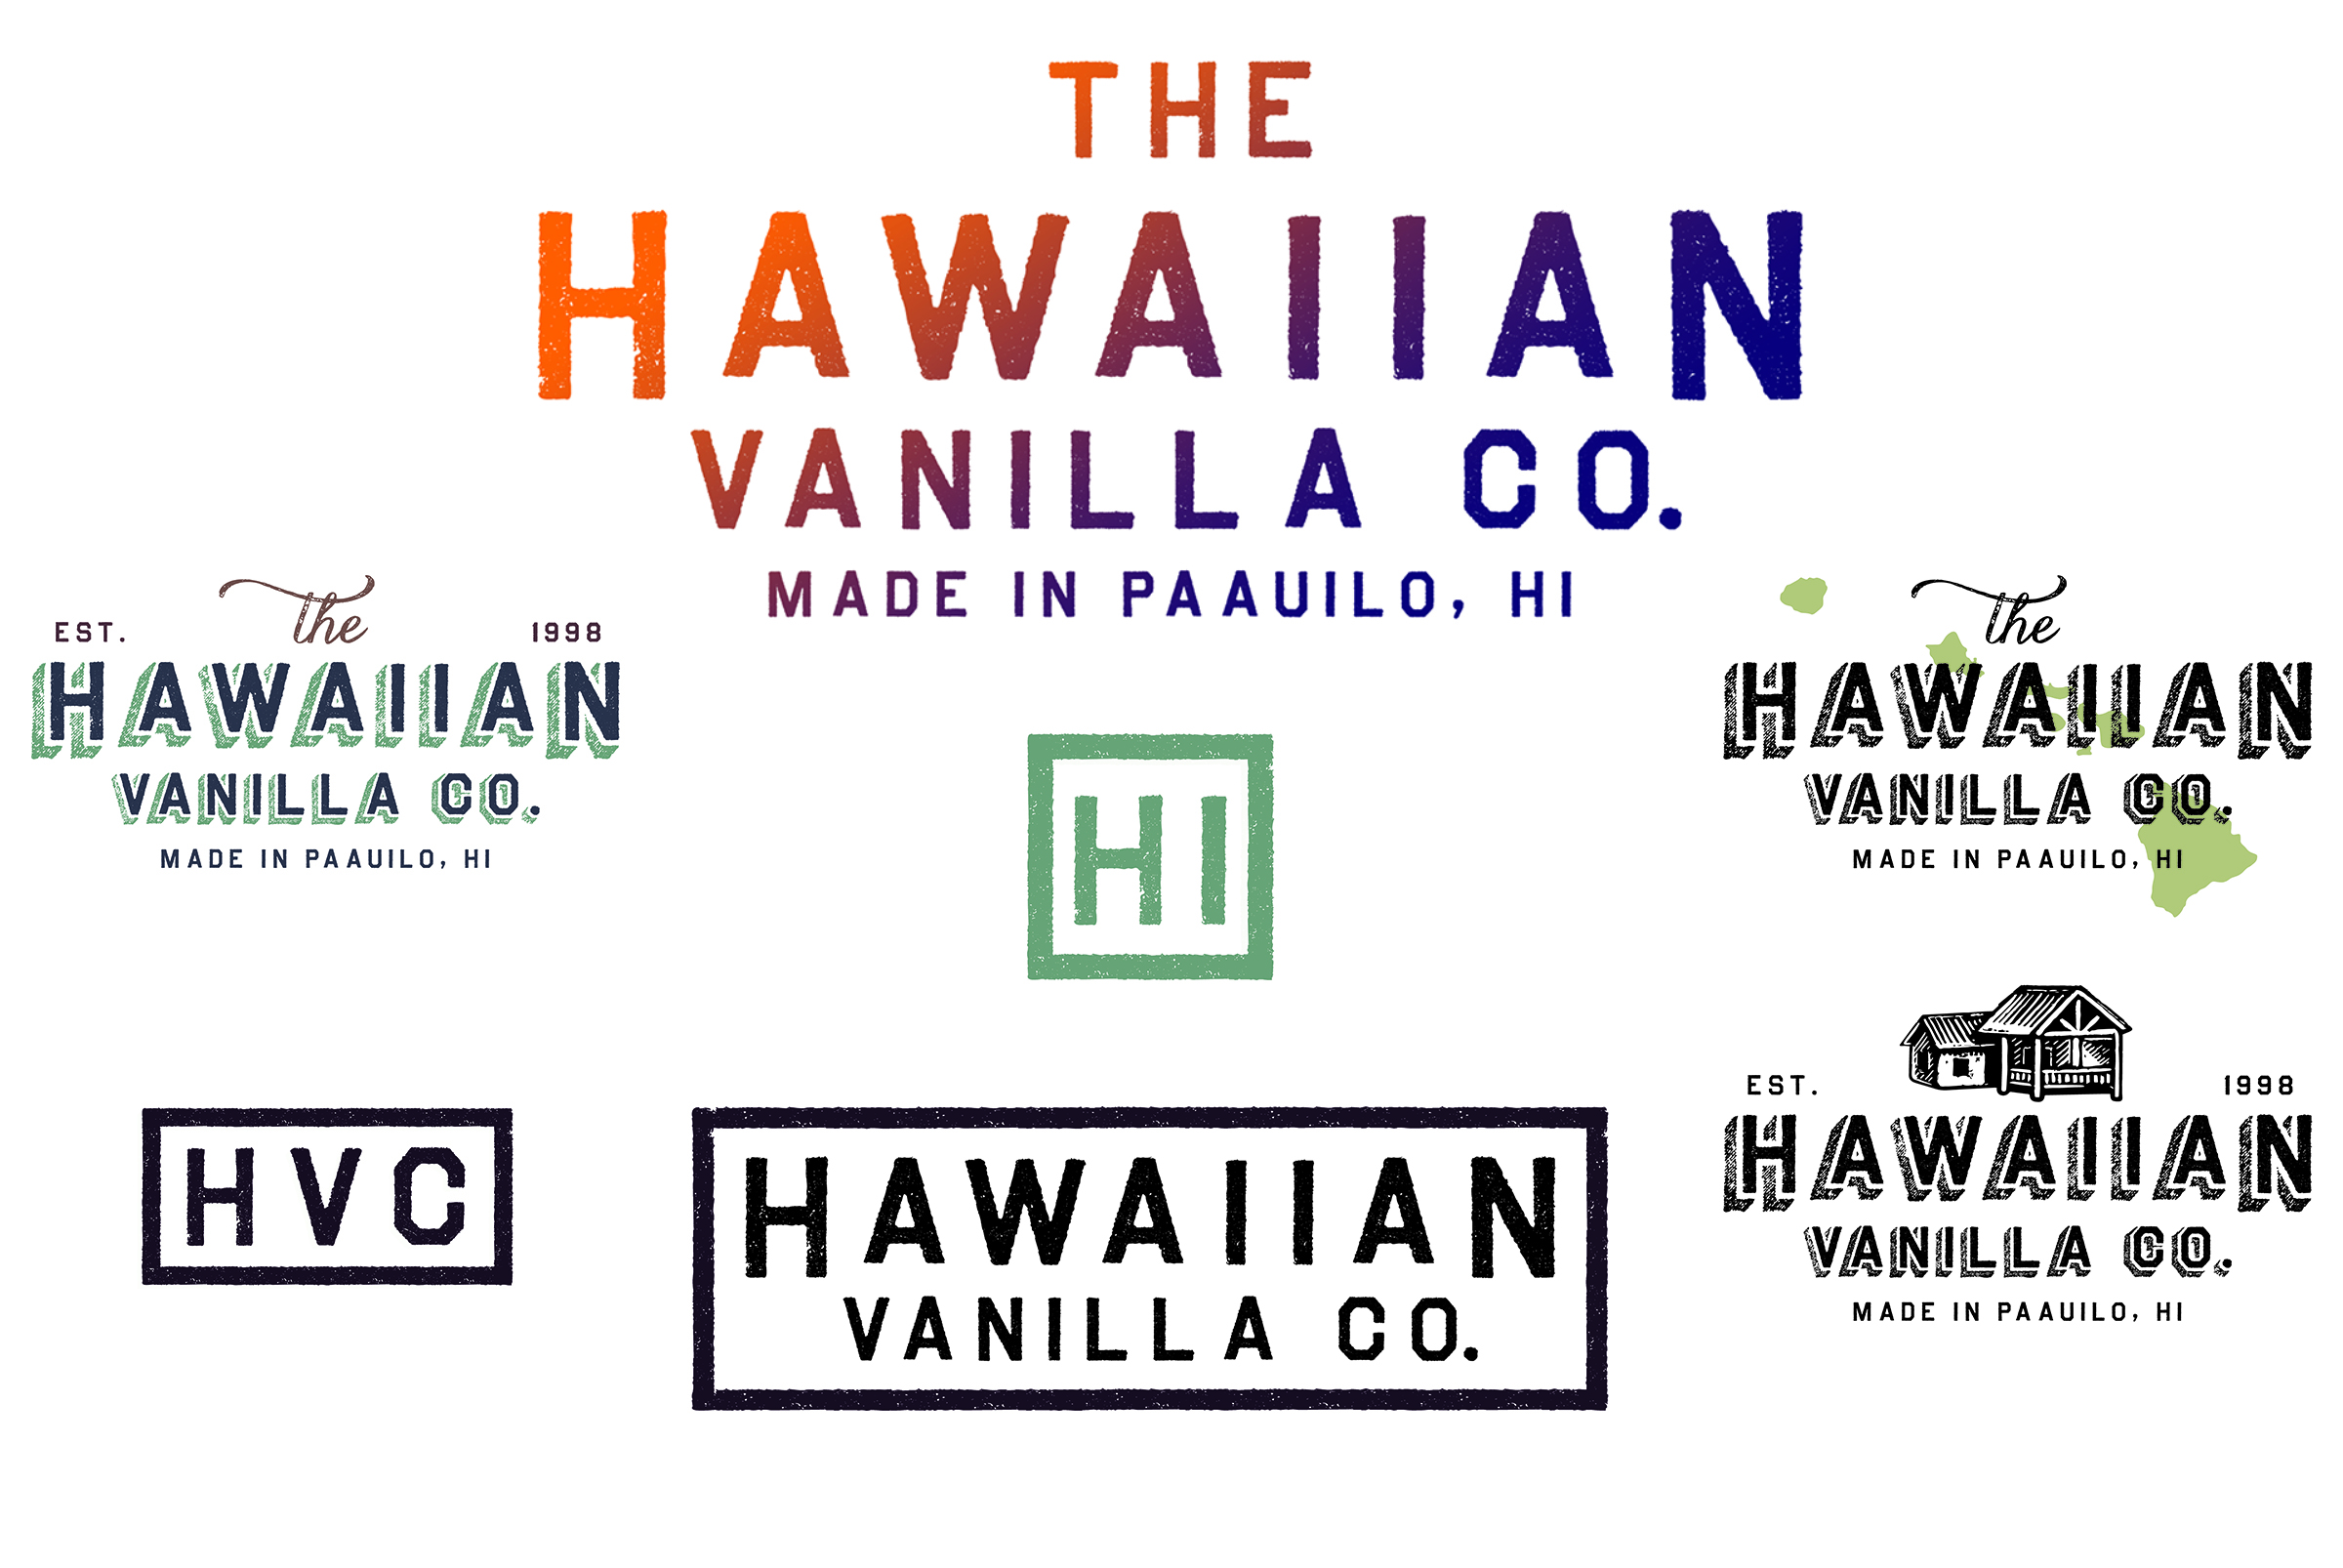 Hawaiian Vanilla Company logo variations